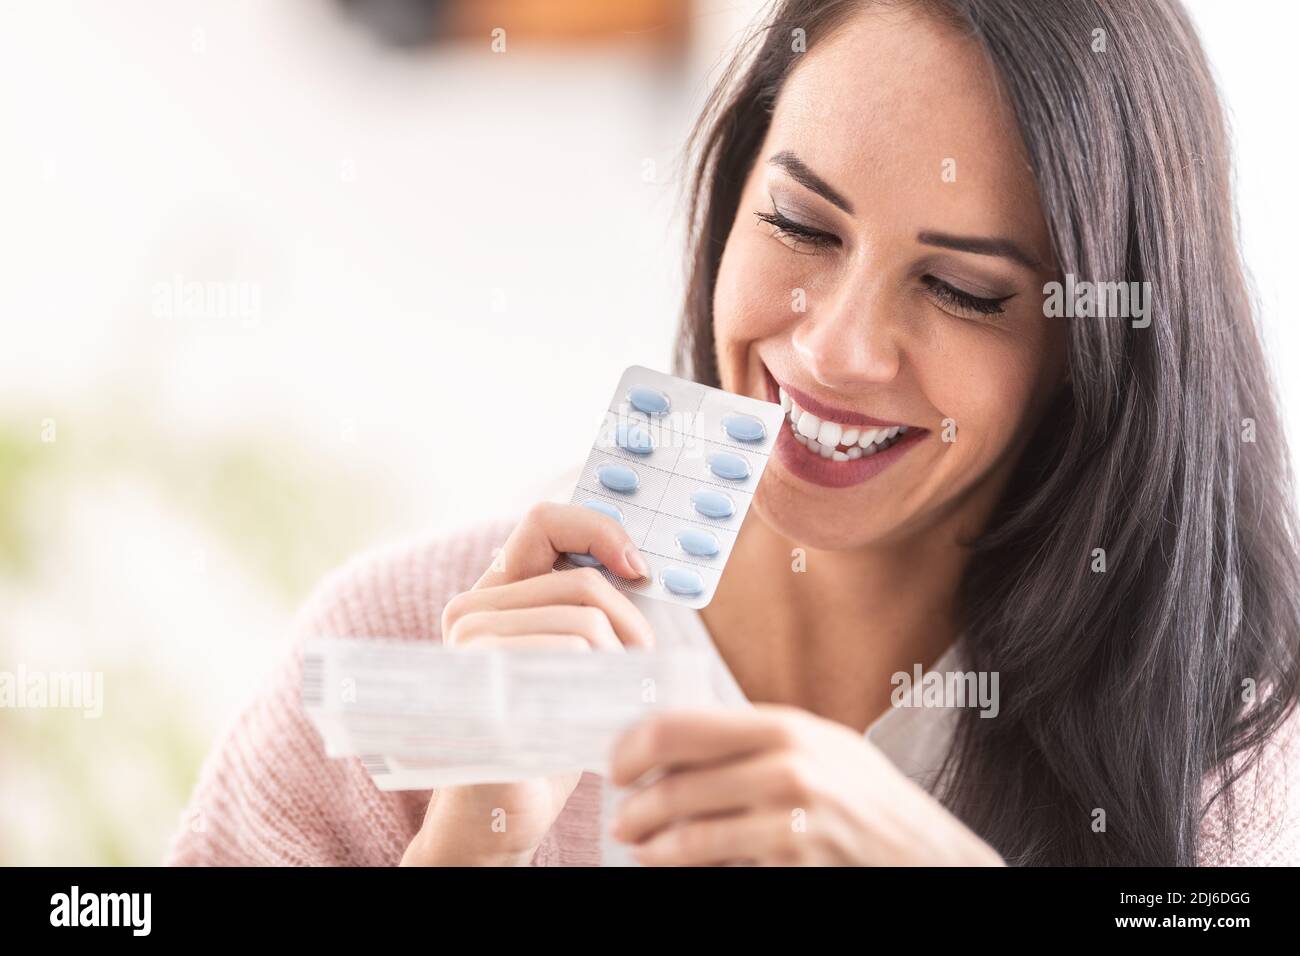 Frau liest ein Etikett der Pillen Verpackung, lächelnd. Stockfoto